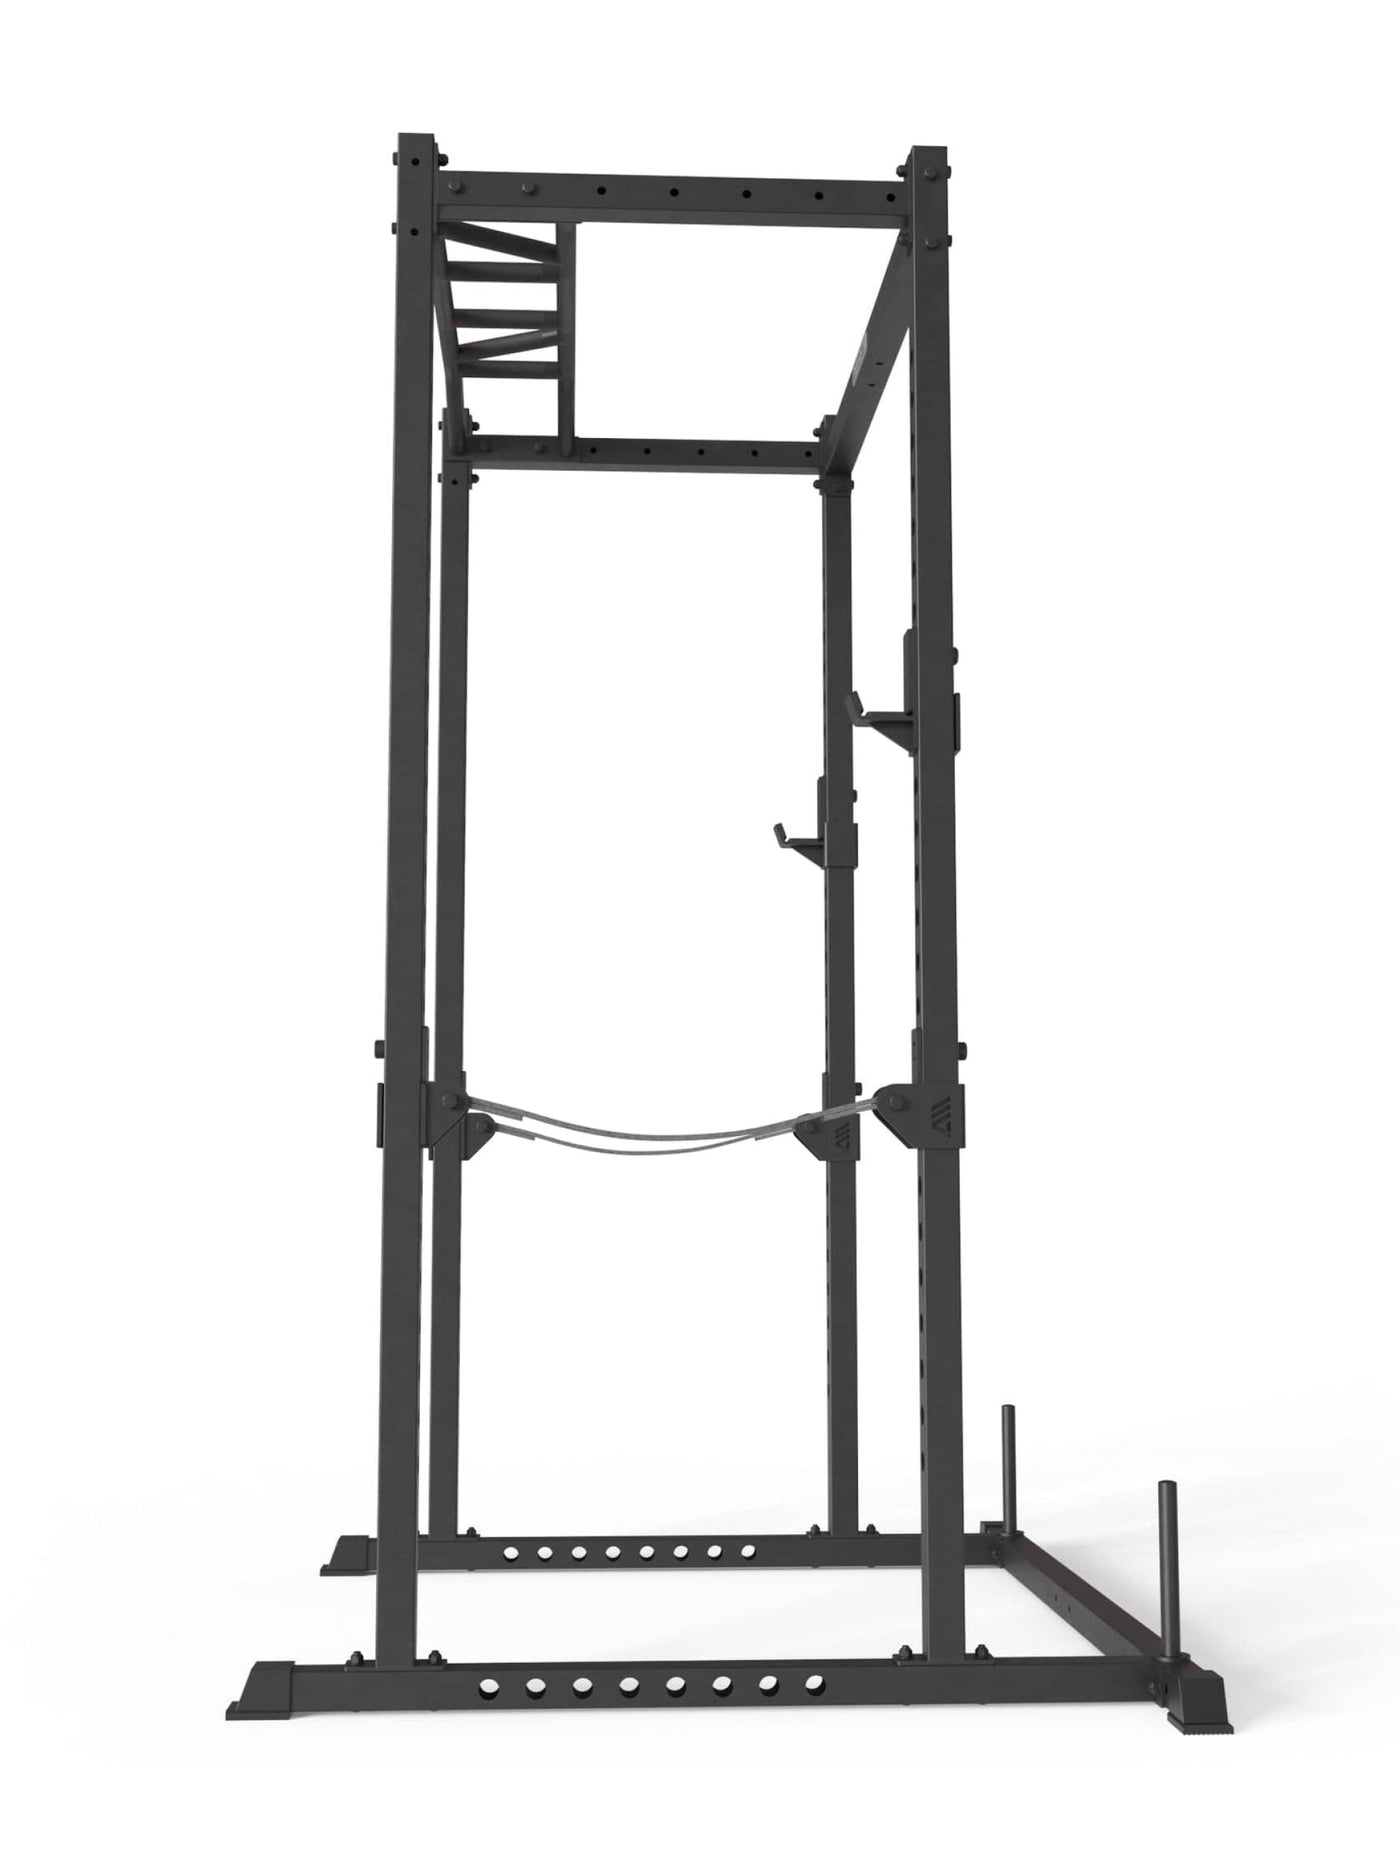 Power Cage R5 Base Käfig: Multi-Grip Pull-Up Bar, Pin-and-Pipe-Safeties, J-Hooks und Gewichts-Pins, ideal für Fitnesstraining mit Hantelbank und Gewichten, #size_213-cm